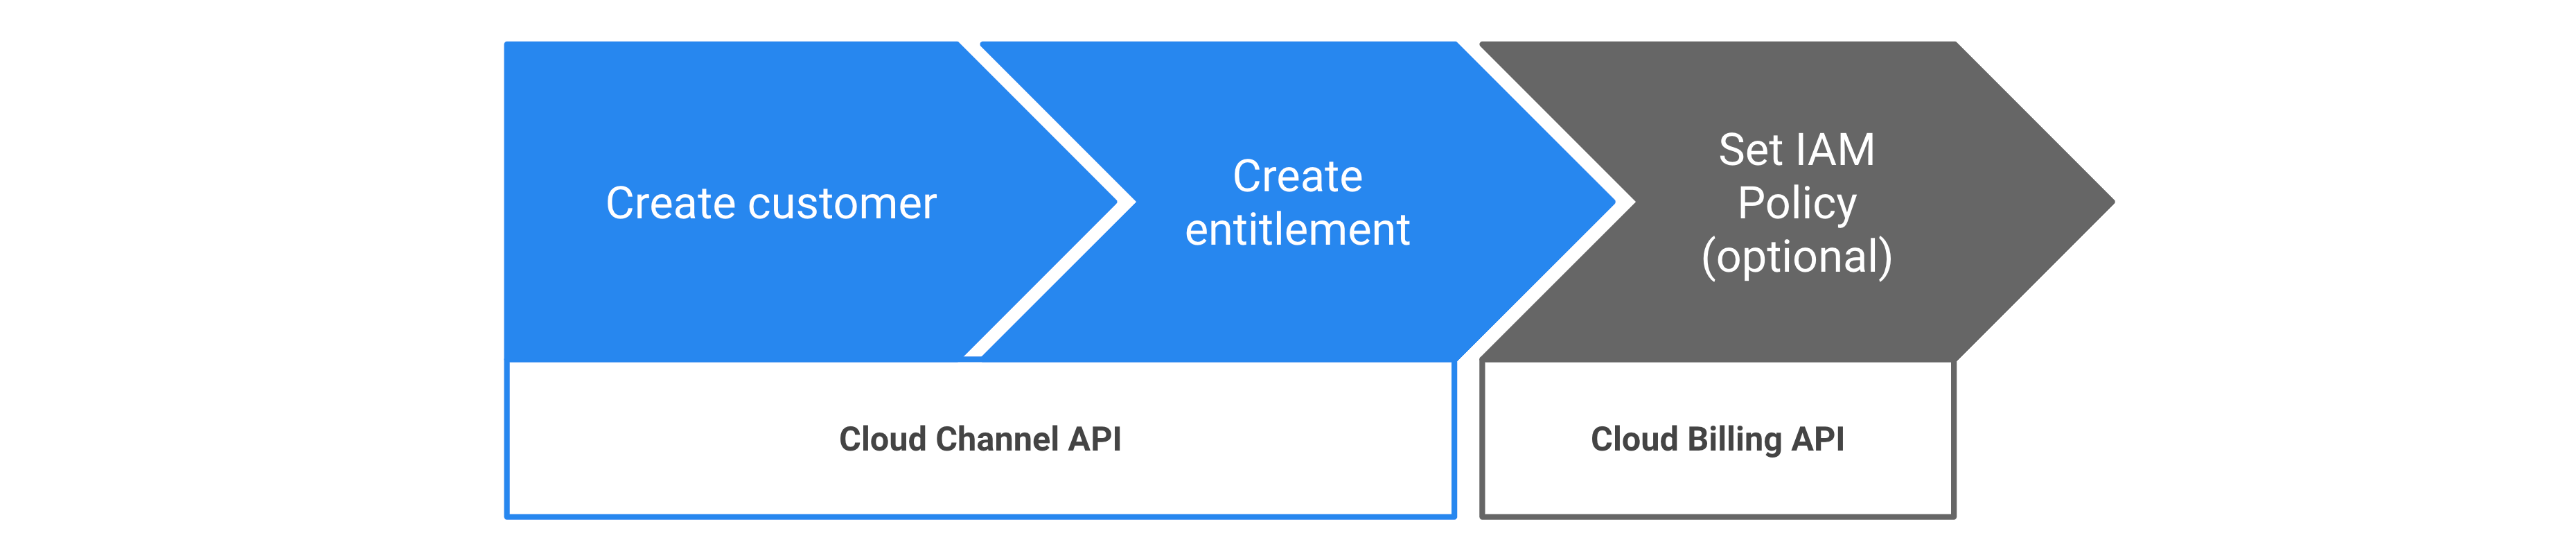 Procédure pour provisionner les droits d'accès Google Cloud via l'API Cloud Channel